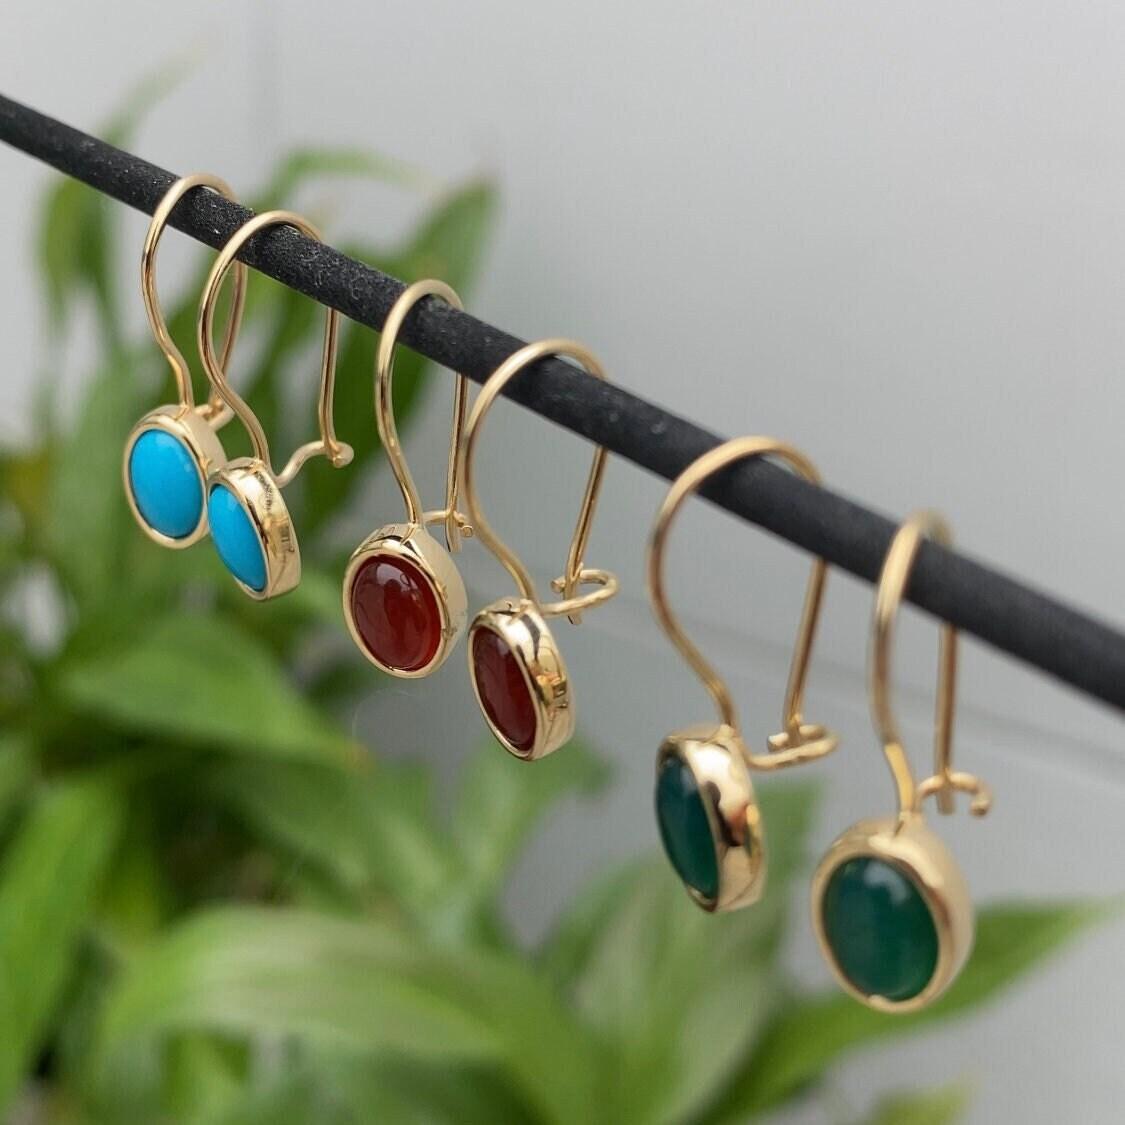 14K Gold Agate Stone Earrings Hems Jewellery 